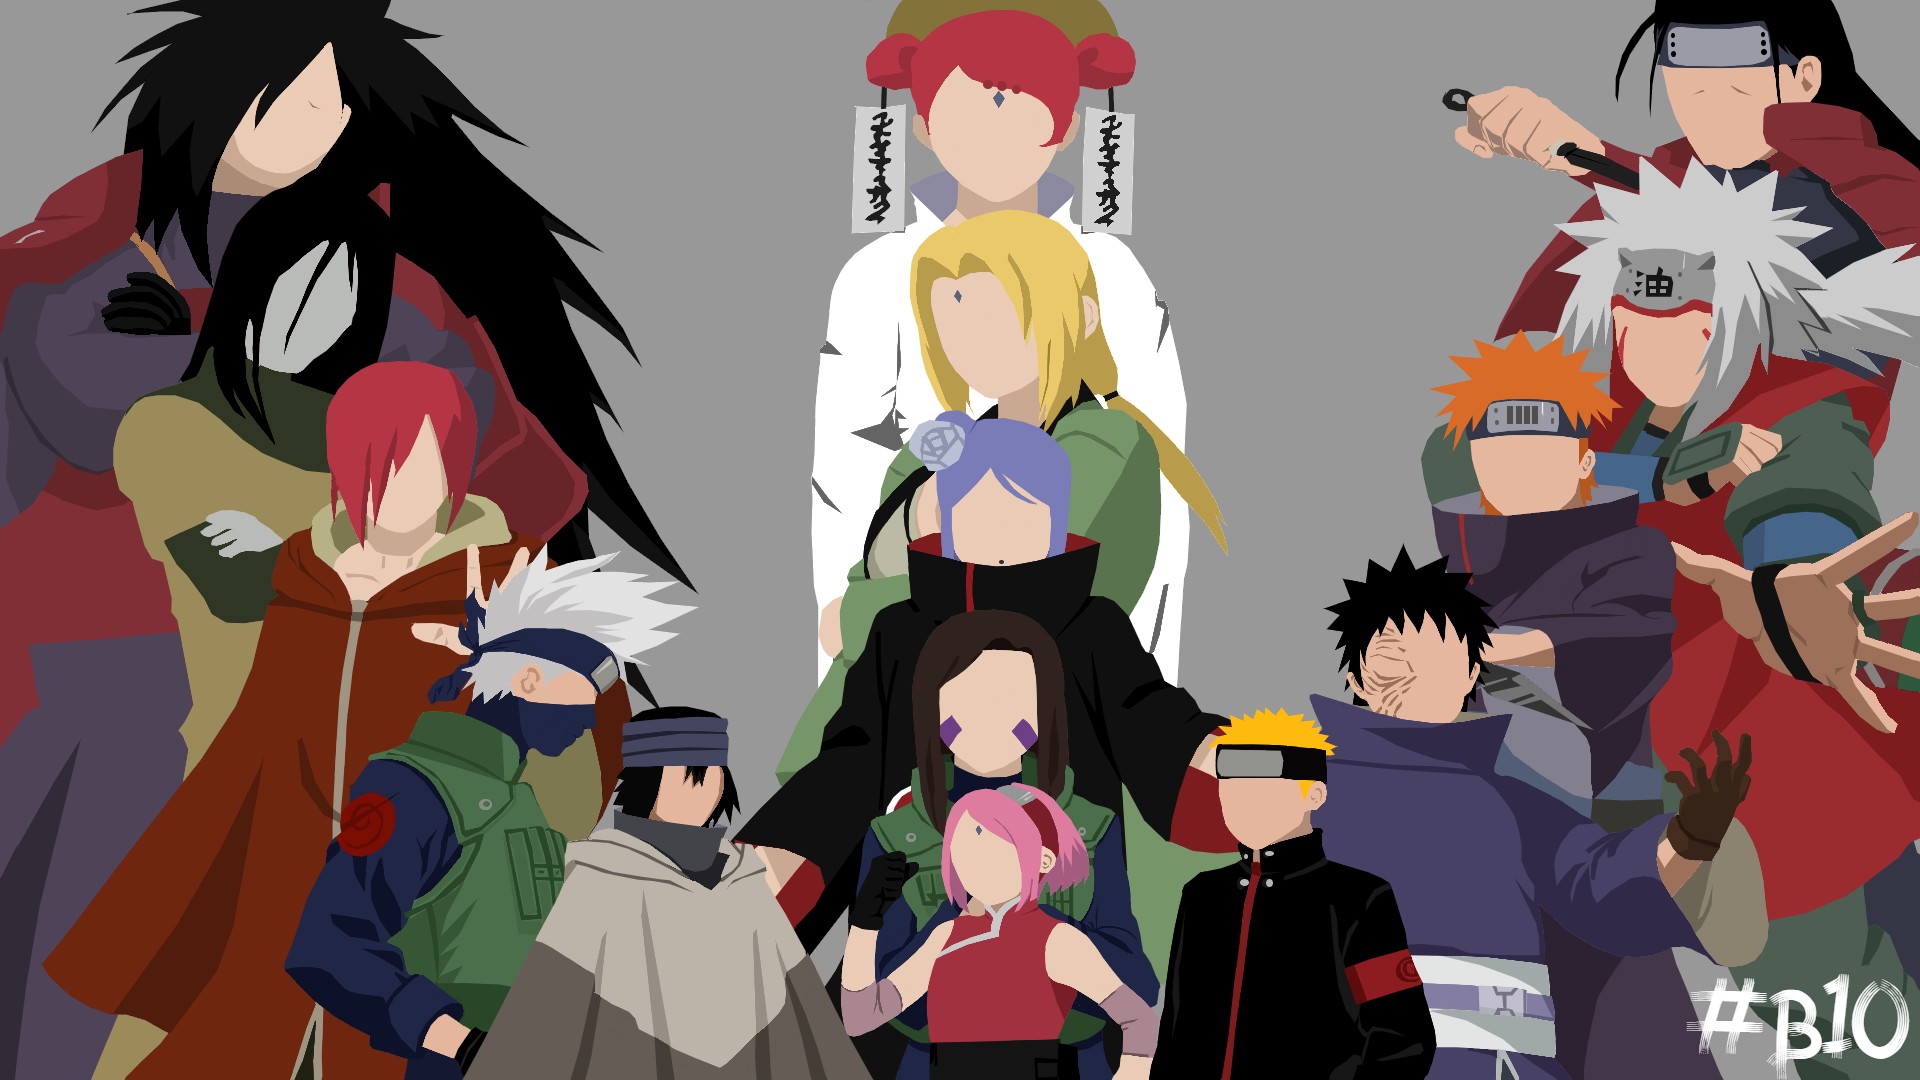 HD desktop wallpaper: Anime, Naruto, Sasuke Uchiha, Pain (Naruto), Konan  (Naruto), Naruto Uzumaki, Kakashi Hatake, Tsunade (Naruto), Jiraiya  (Naruto), Orochimaru (Naruto), Hashirama Senju, Madara Uchiha, Obito Uchiha,  Nagato (Naruto), Sarada Uchiha ...